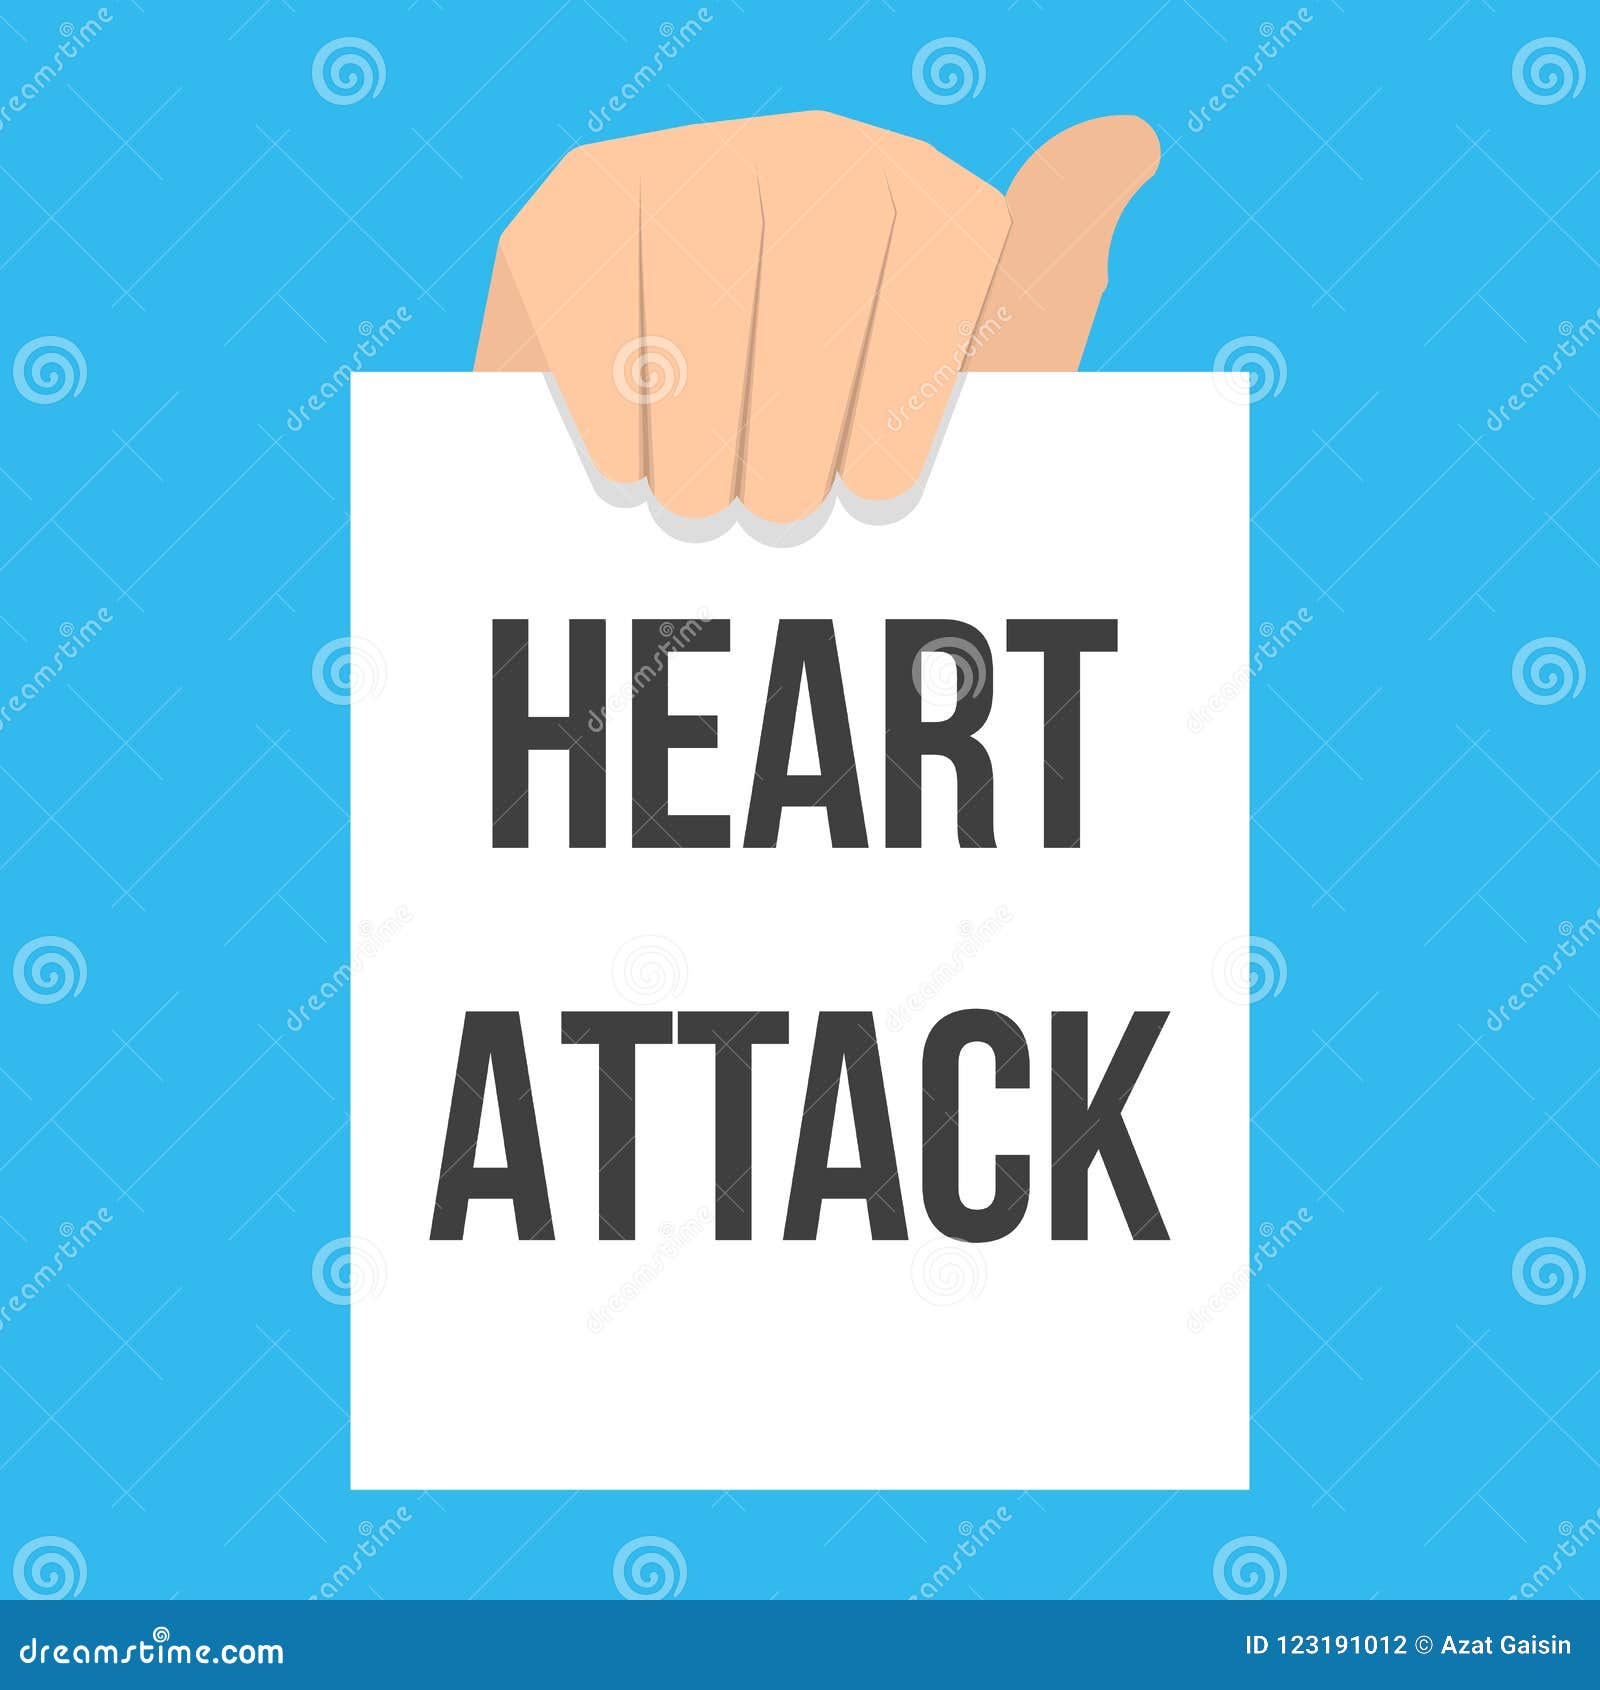 Heart attack essay